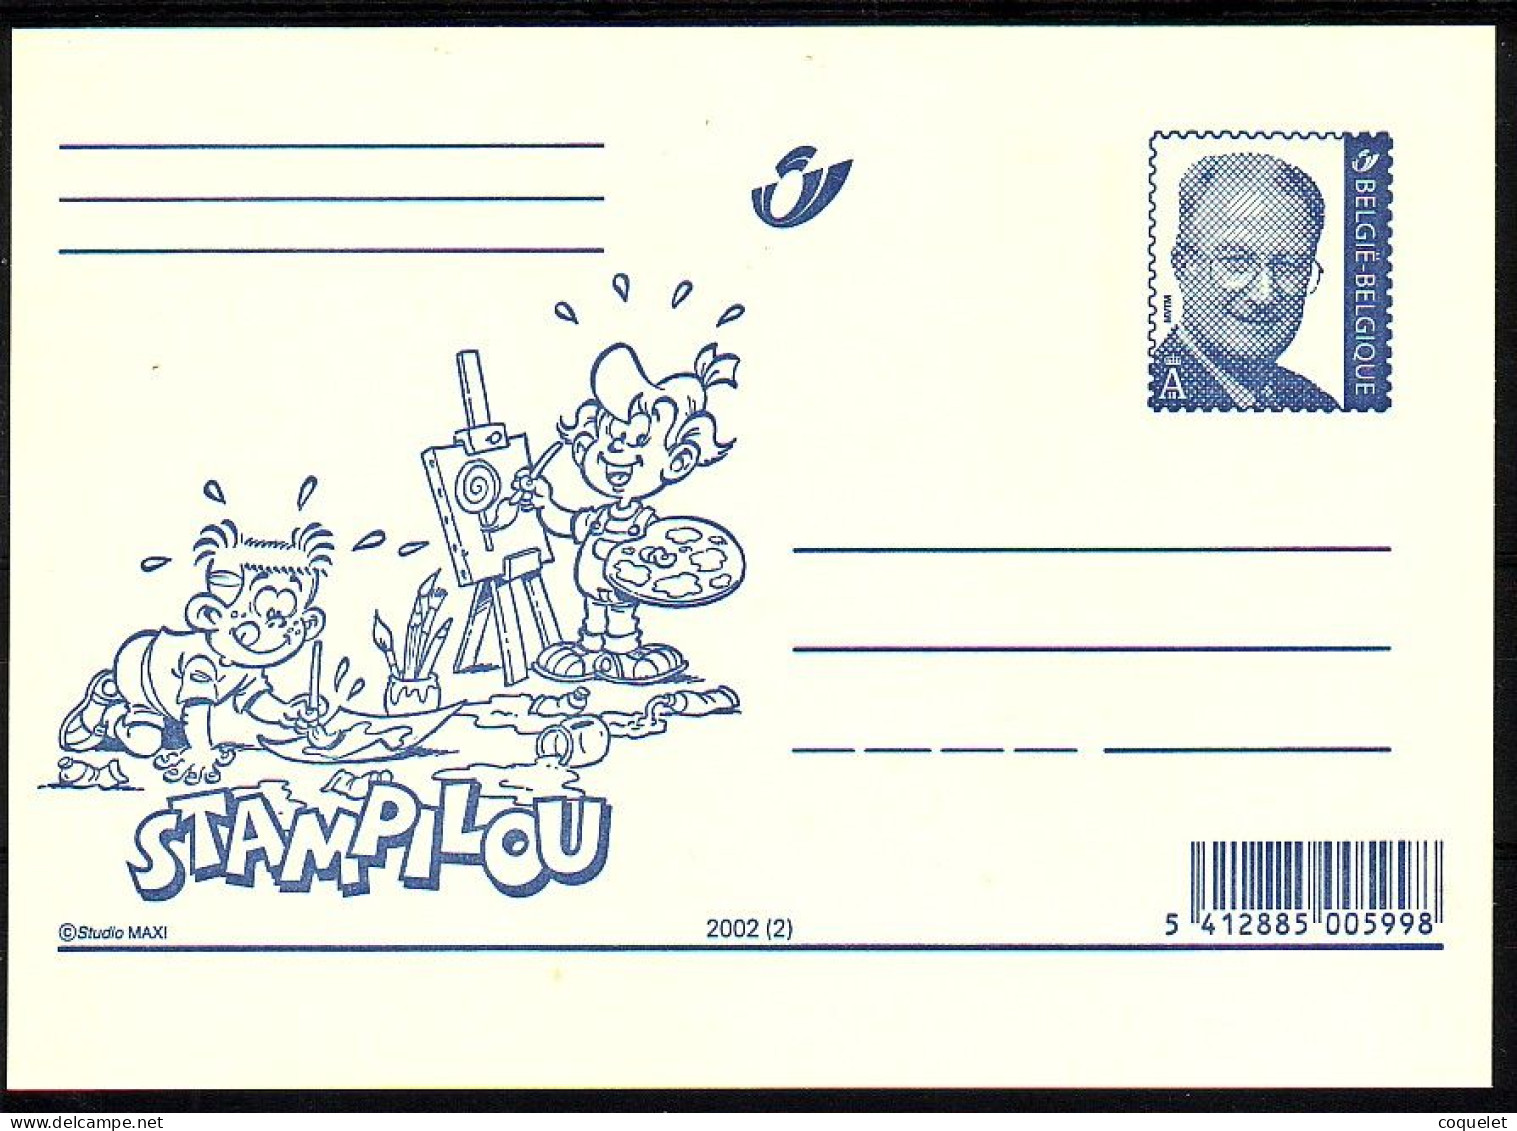 Belgique - Entiers Postaux - Cartes Illustrées N° 82 # STAMPILOU  2 - Comics